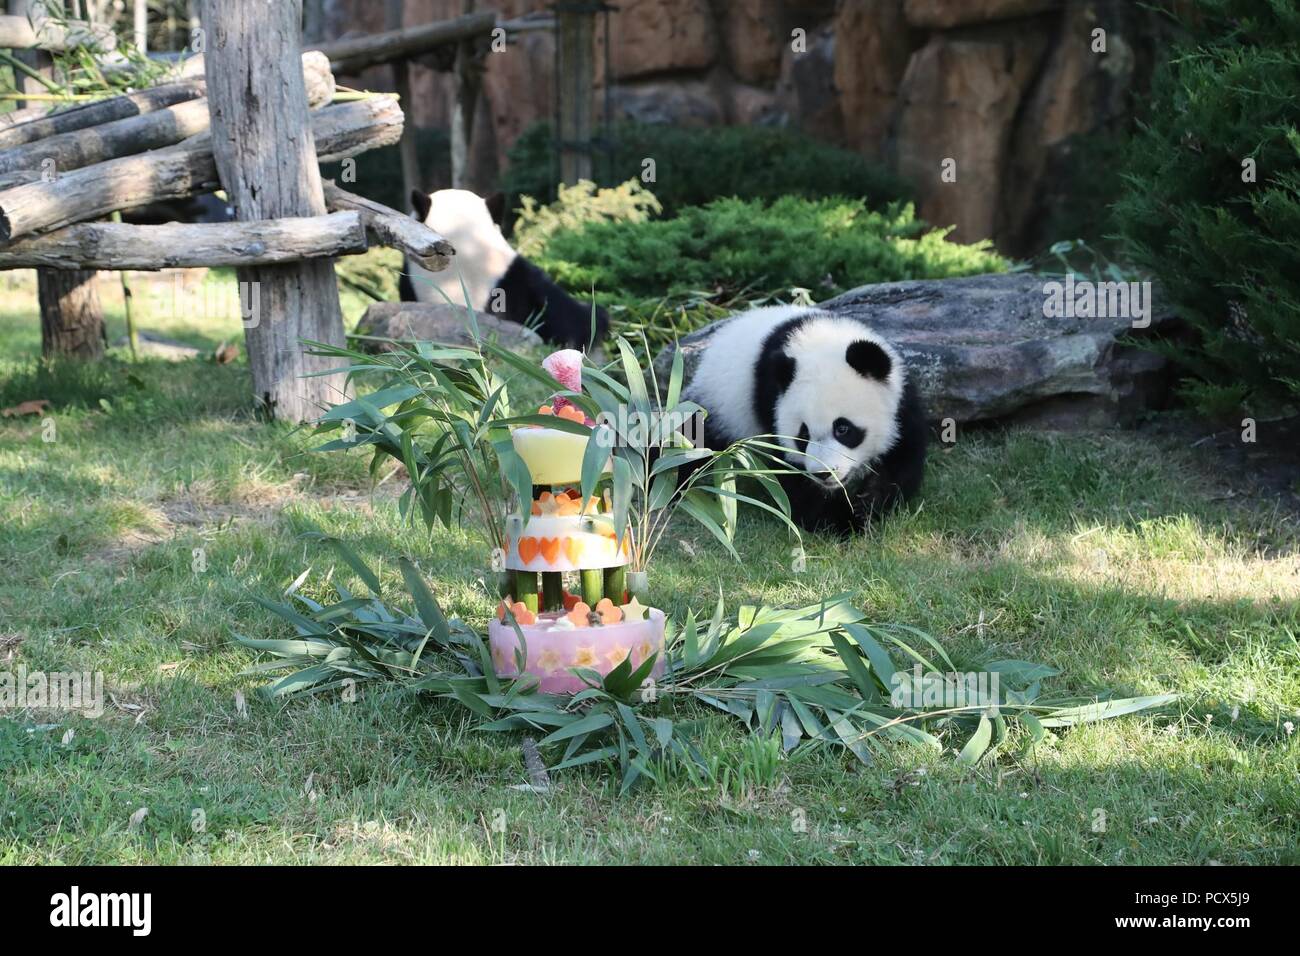 Saint Aignan. 4 de agosto, 2018. El panda gigante de bebé 'Yuan Meng' se acerca a su tarta de cumpleaños durante la ceremonia de celebración de su cumpleaños en el ZooParc de Beauval en Saint-Aignan, Francia, el 4 de agosto de 2018. Crédito: ZooParc de Beauval) (lrz/Xinhua/Alamy Live News Foto de stock